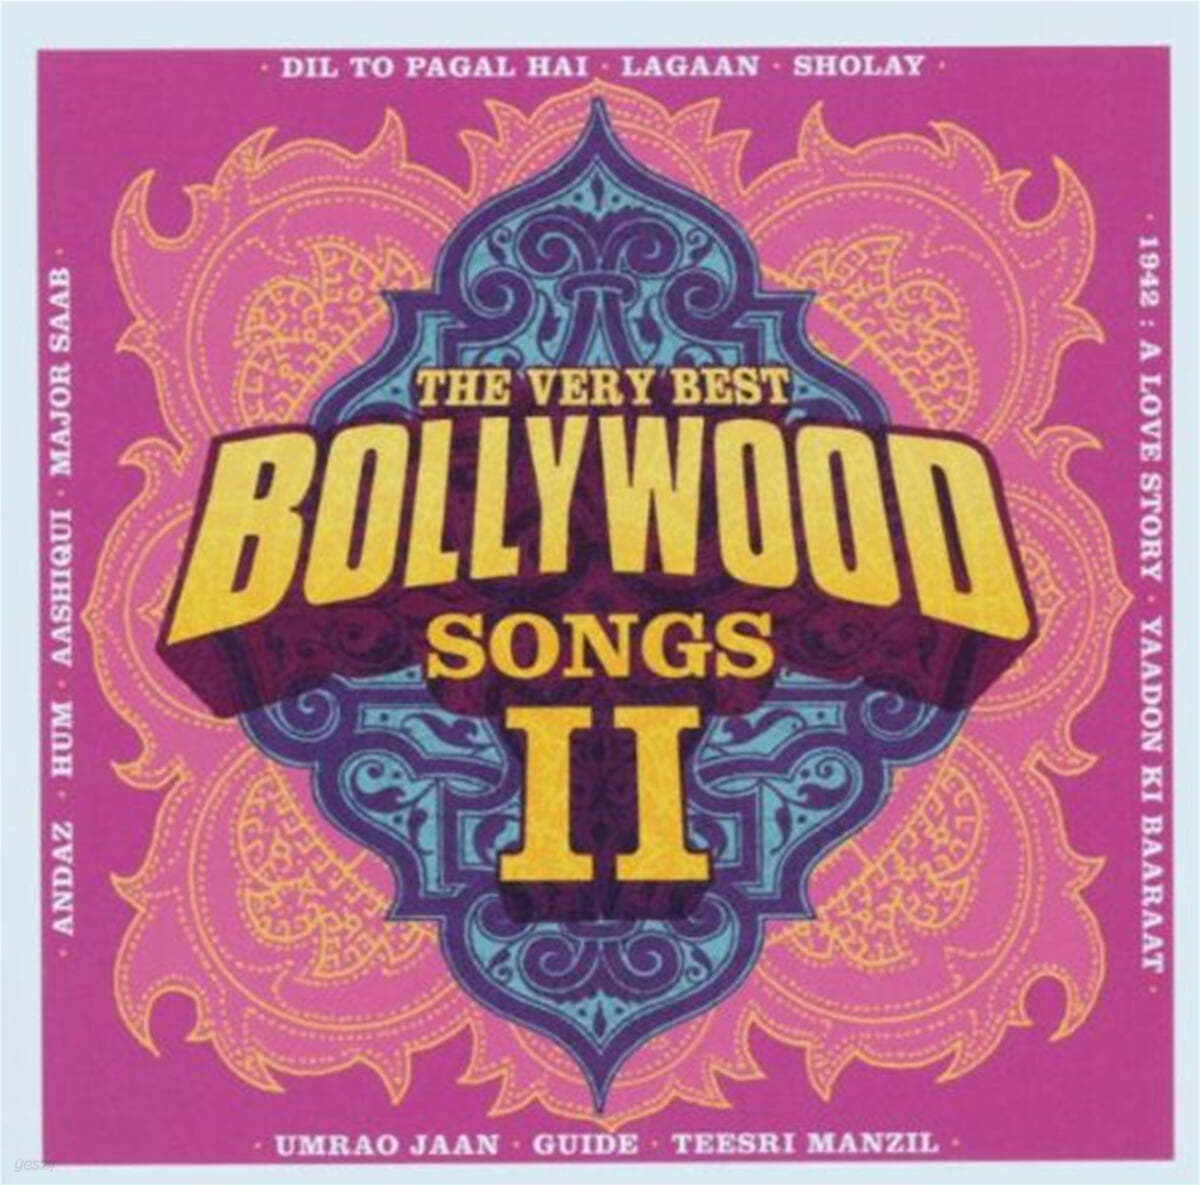 펑크 & 소울 컴필레이션 - 베스트 발리우드 송즈 2집 (The Very Best Bollywood Songs II) 